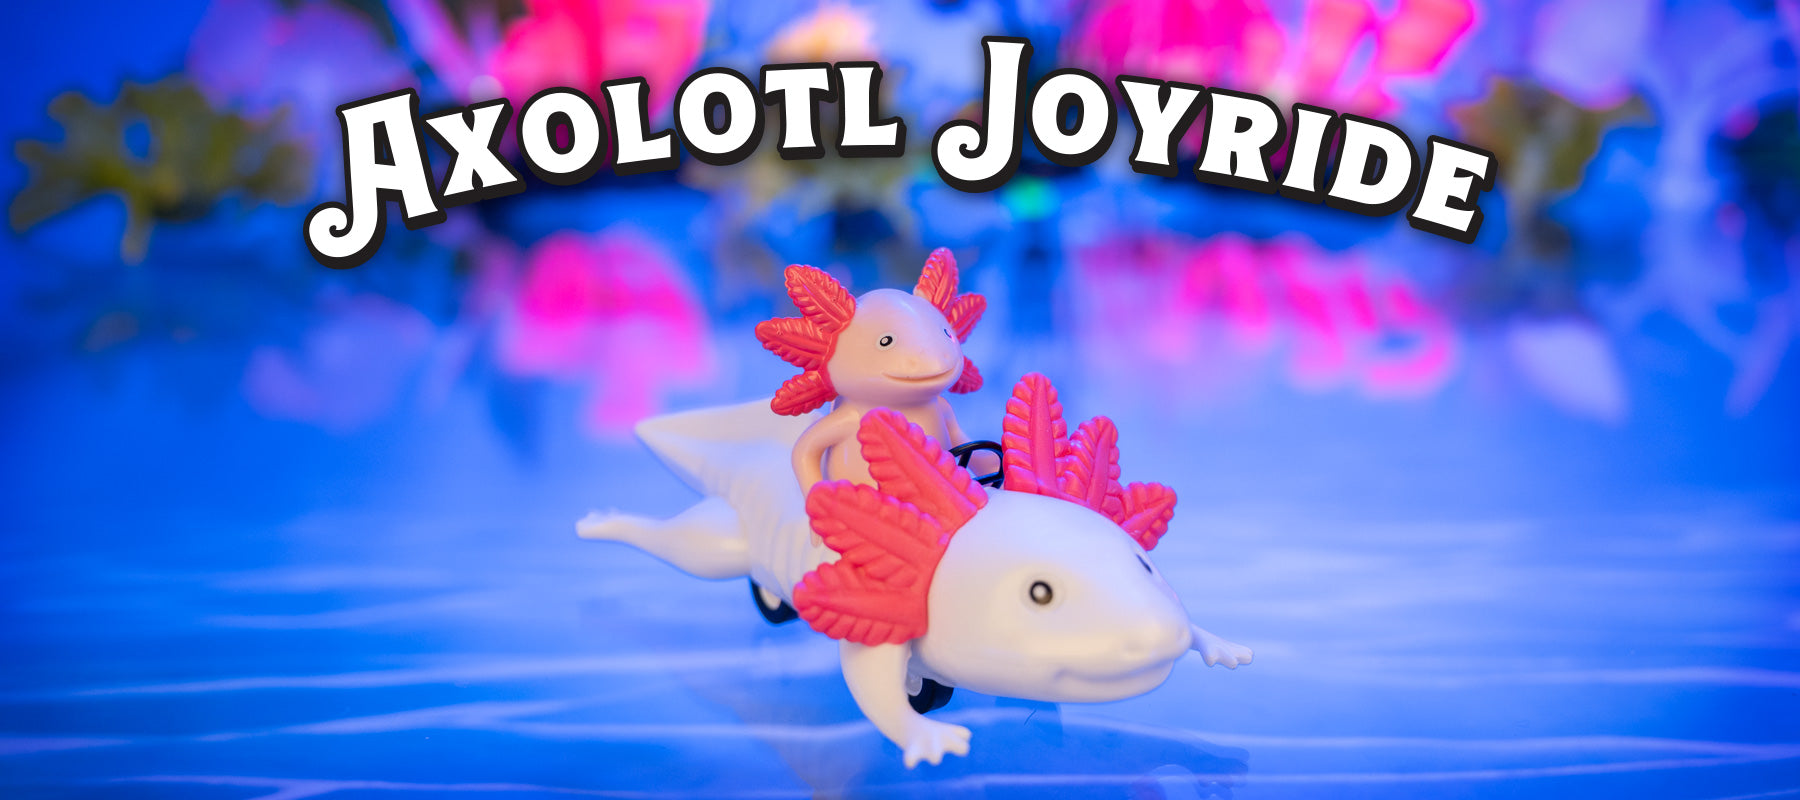 Axolotl Joyride